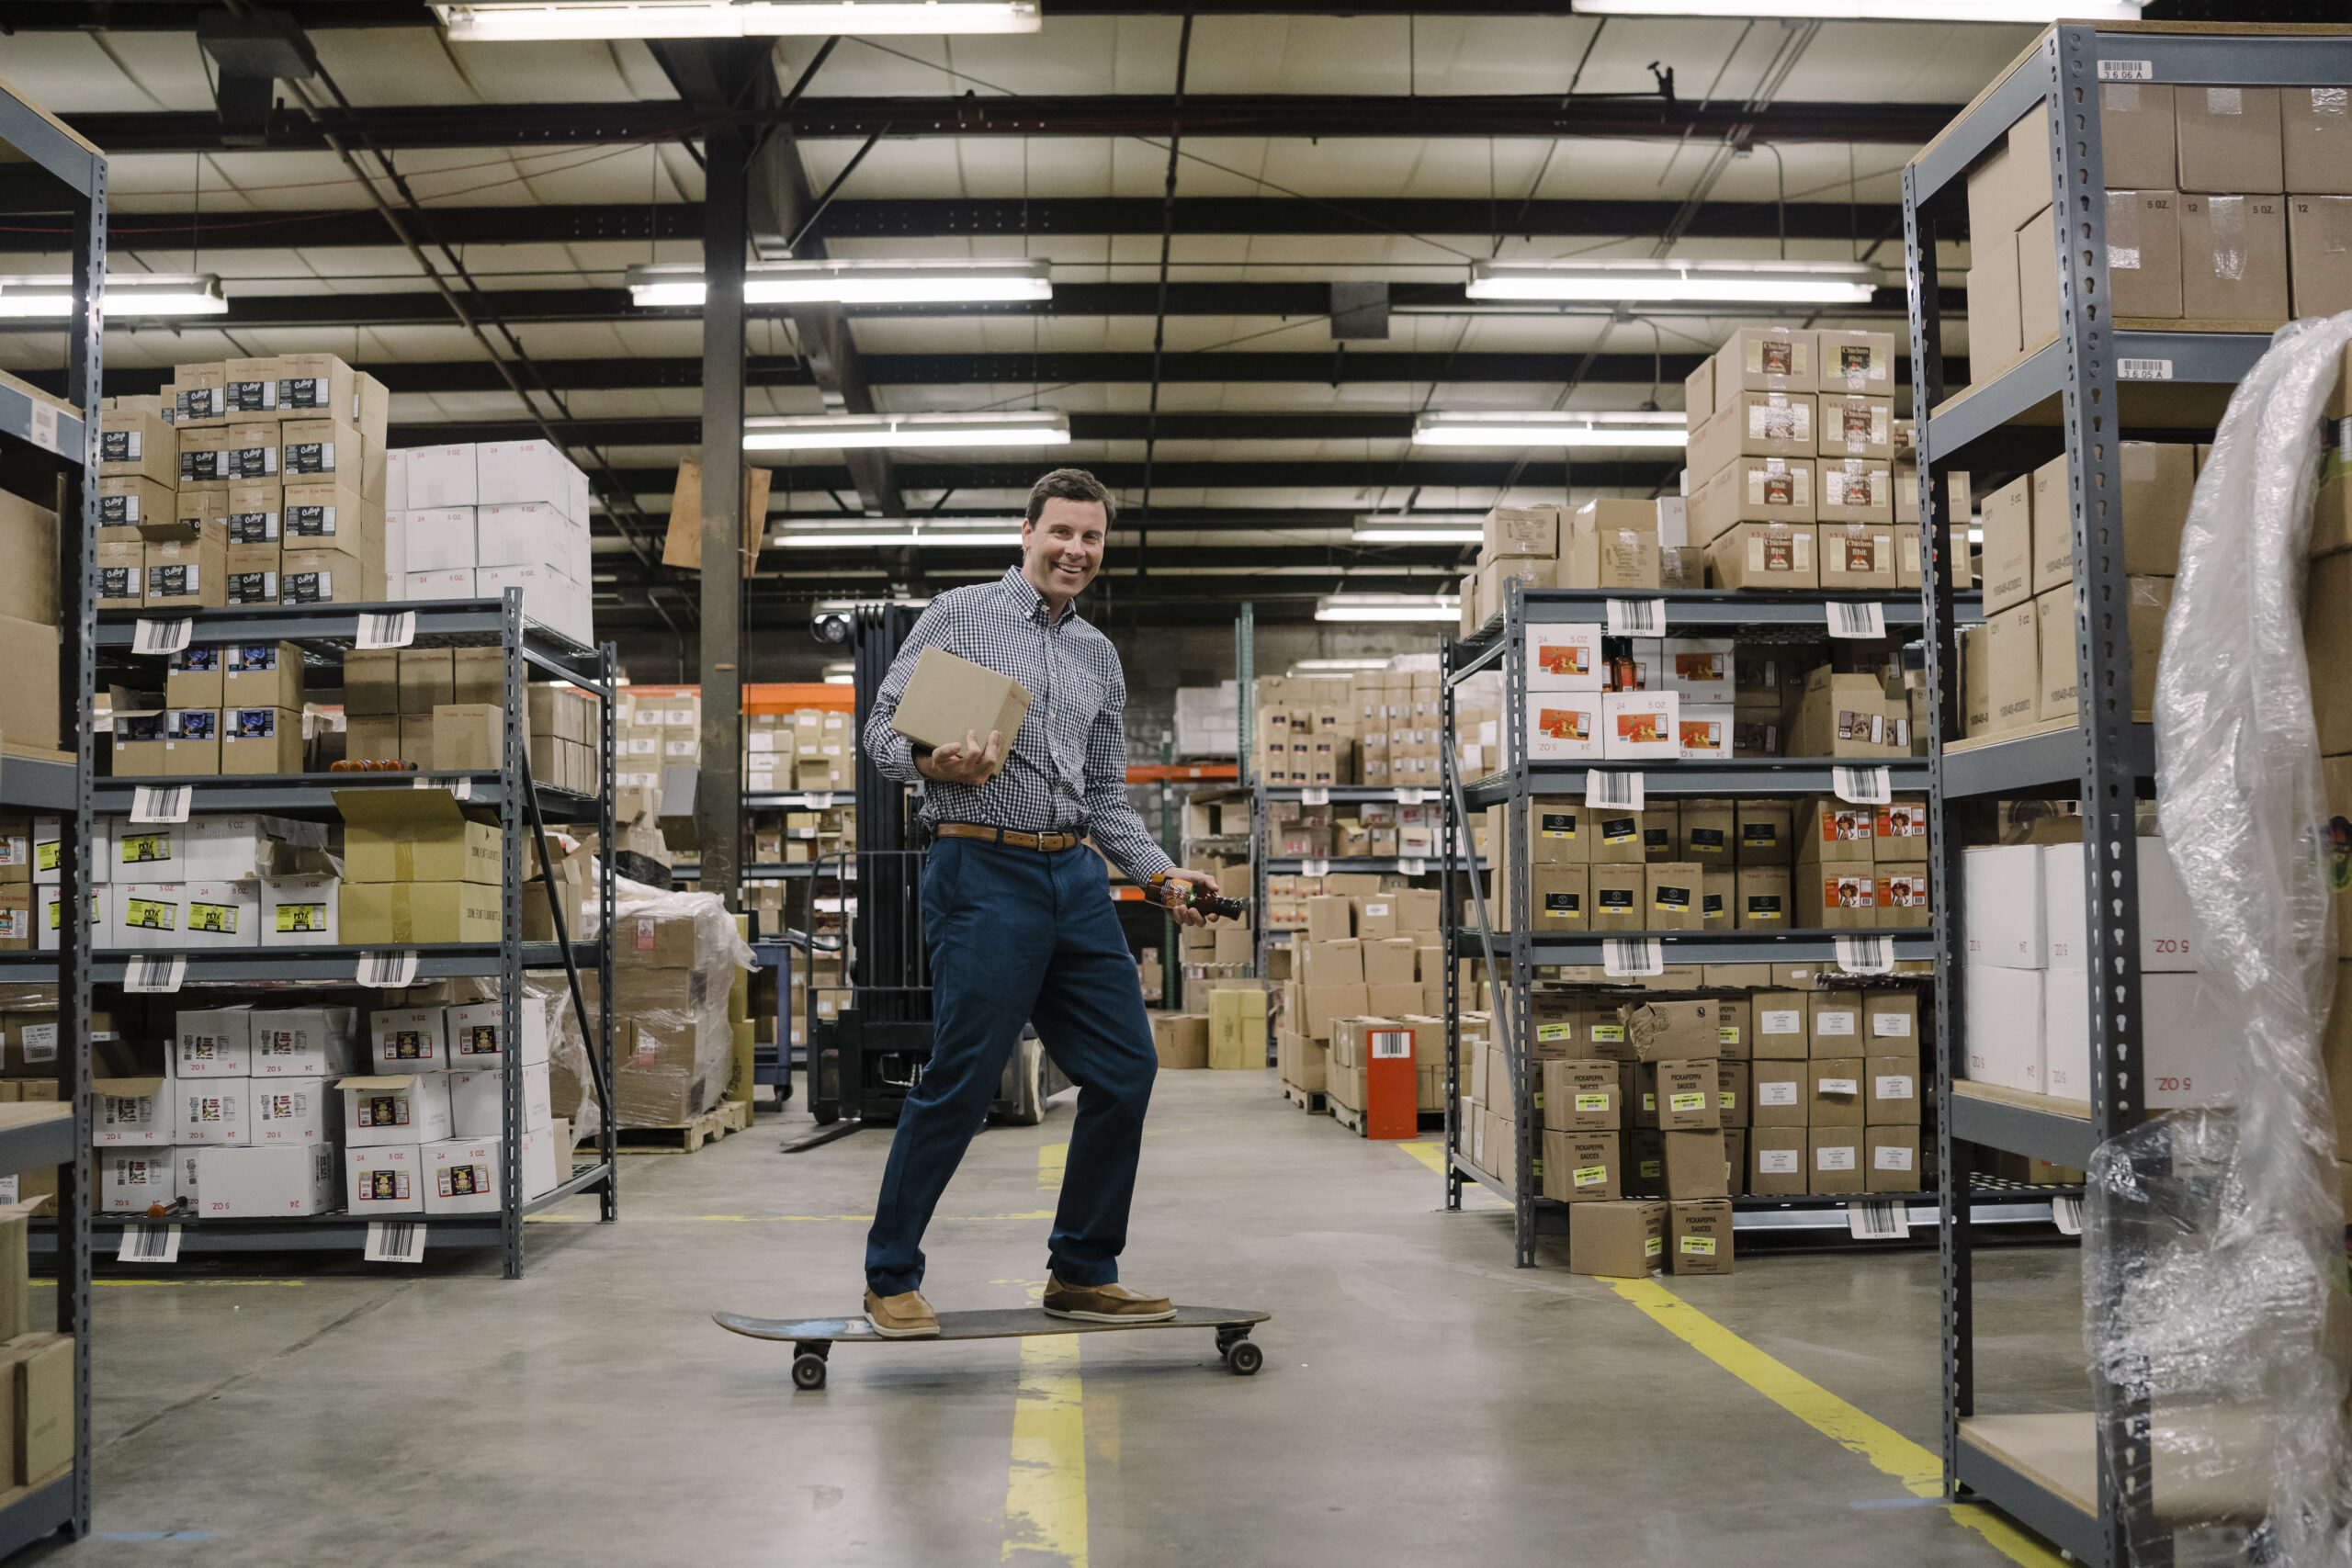 Matt Heald skateboards through the warehouse.